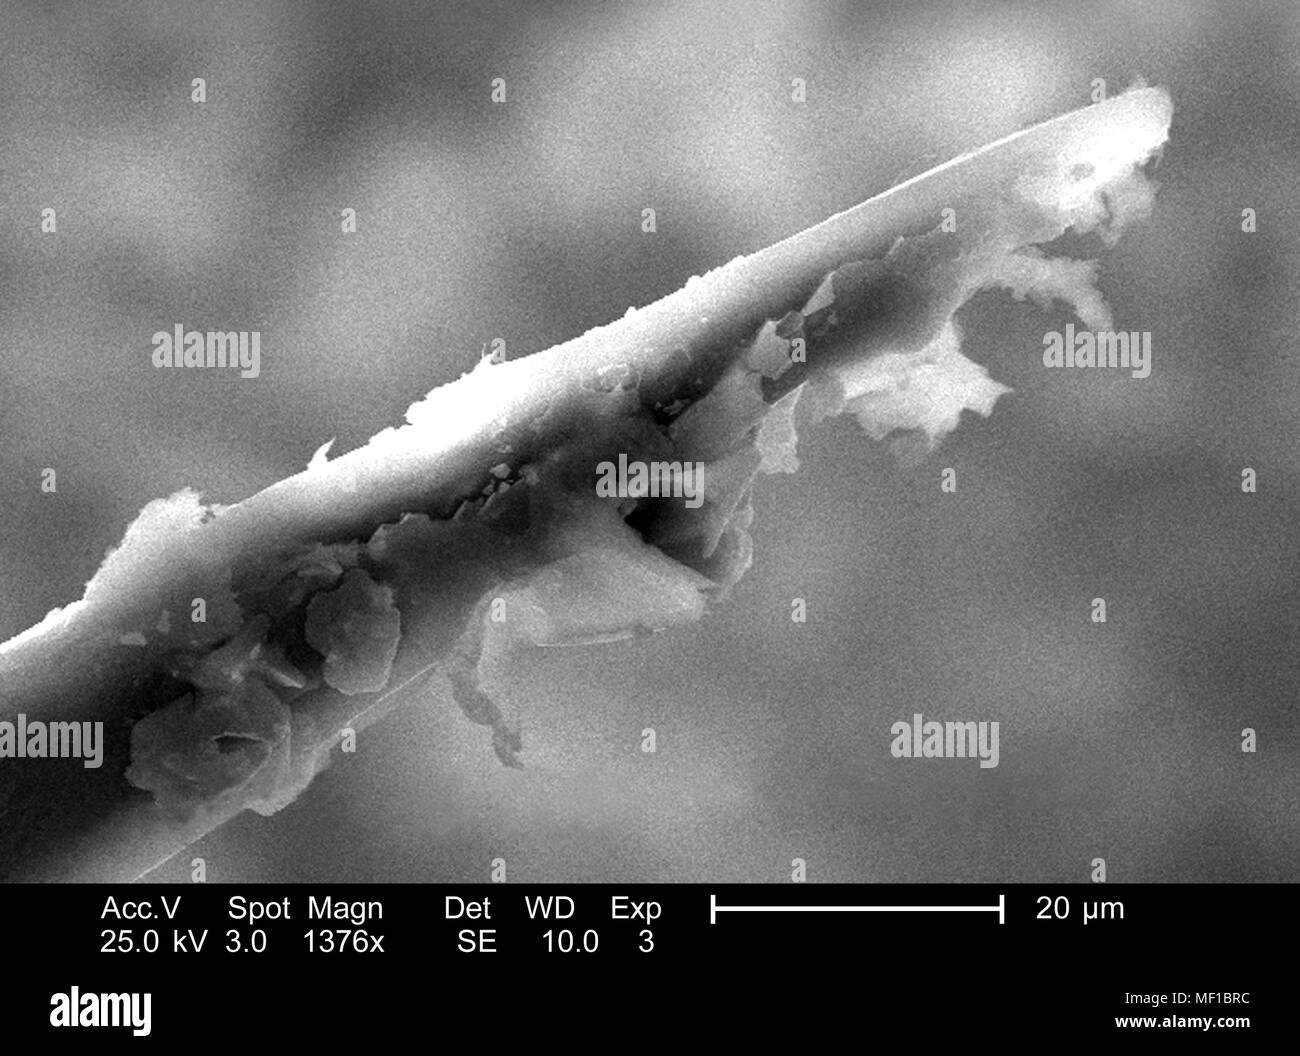 Ultrastrutturali dettagli morfologiche di un misterioso hymenopteran insetto apparato stinger, raffigurato nel 1376x di scansione ingrandita al microscopio elettronico (SEM) immagine, 2005. Immagine cortesia di centri per il controllo delle malattie (CDC) / Janice Haney Carr. () Foto Stock